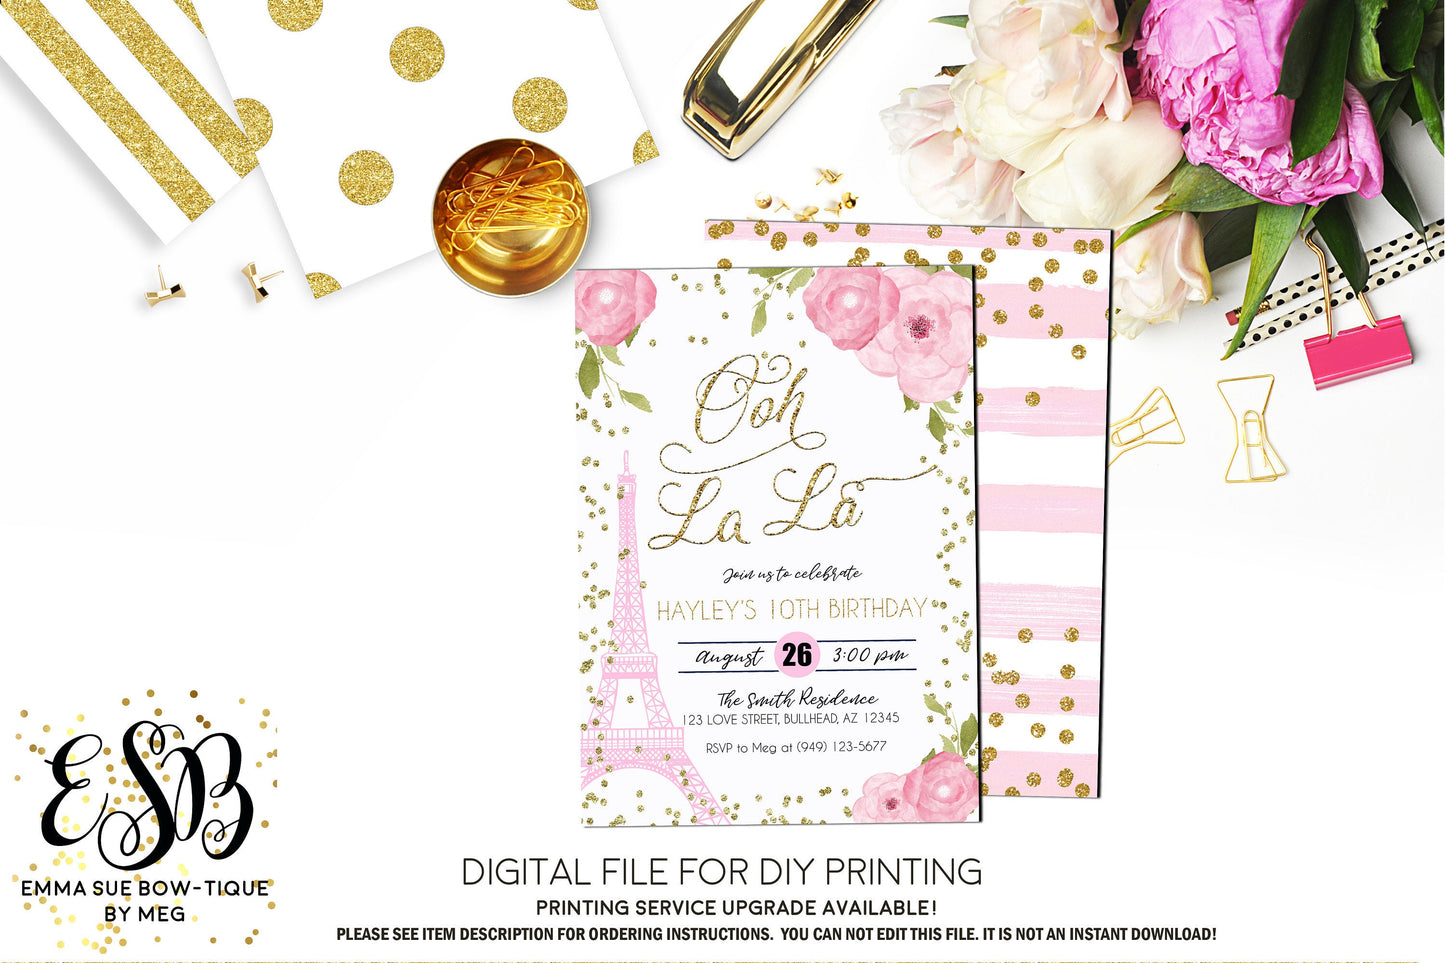 Ooh La La - Paris Eiffel Tower Birthday Party Invitation Printable - Digital File  (Paris-Pnkflowers)